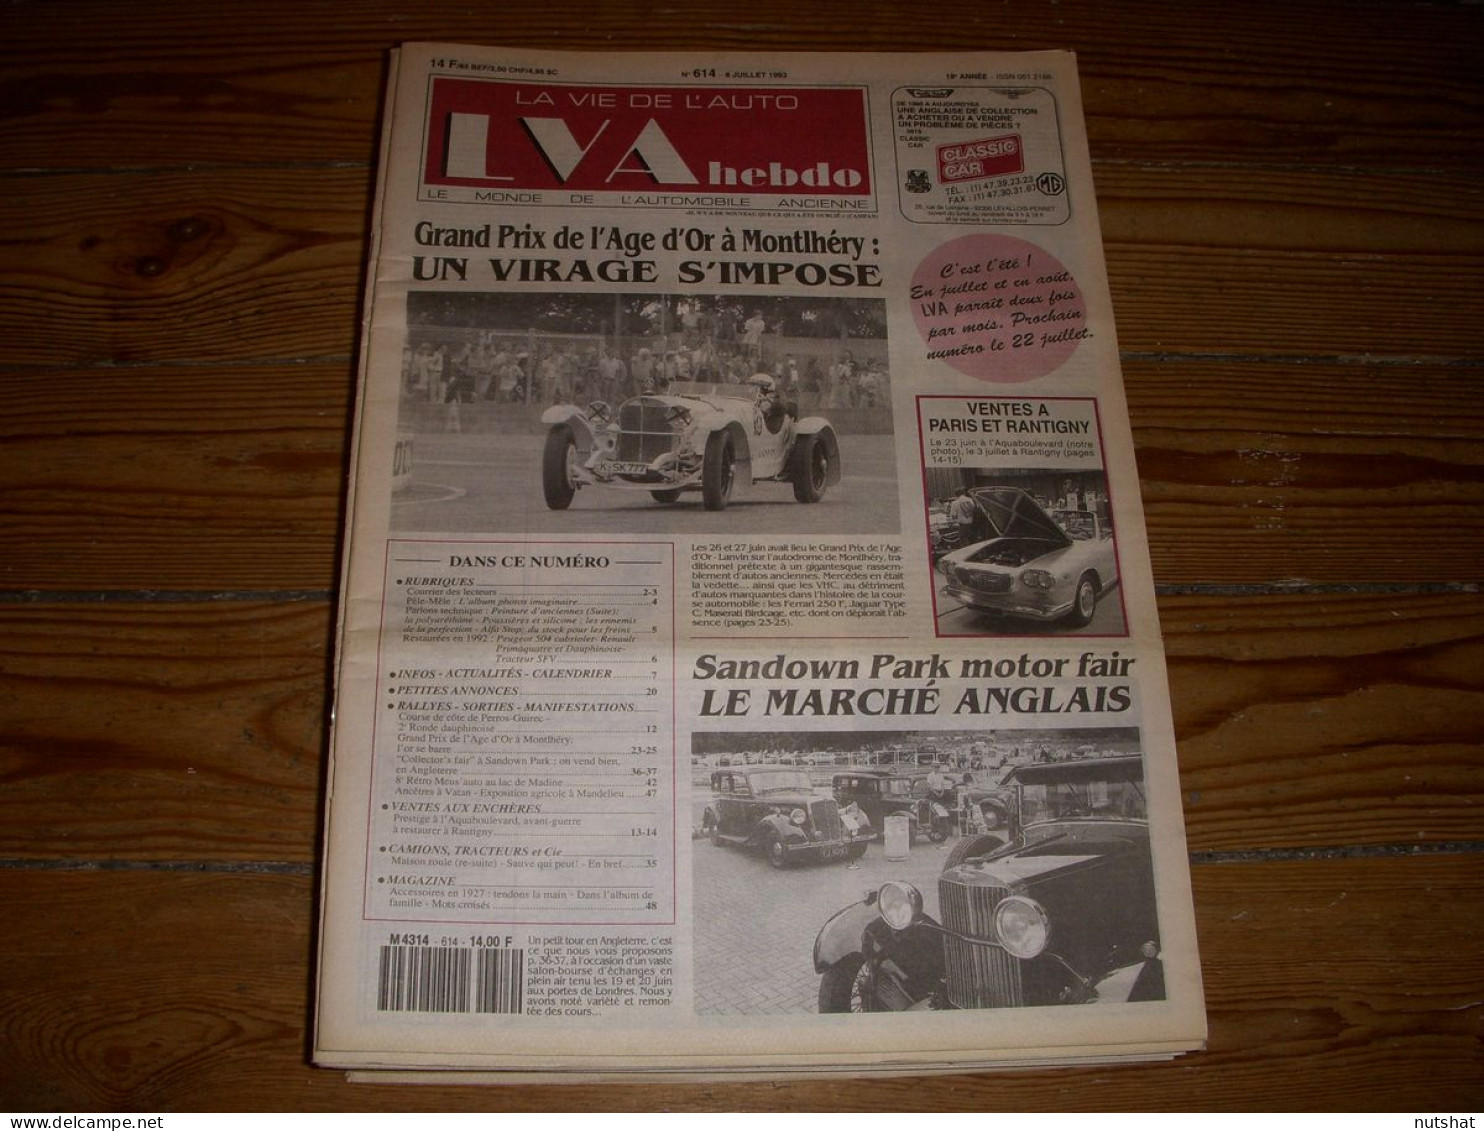 LVA VIE De L'AUTO 614 07.1993 GP De L'AGE D'OR A MONTLHERY Le MARCHE ANGLAIS - Auto/Moto